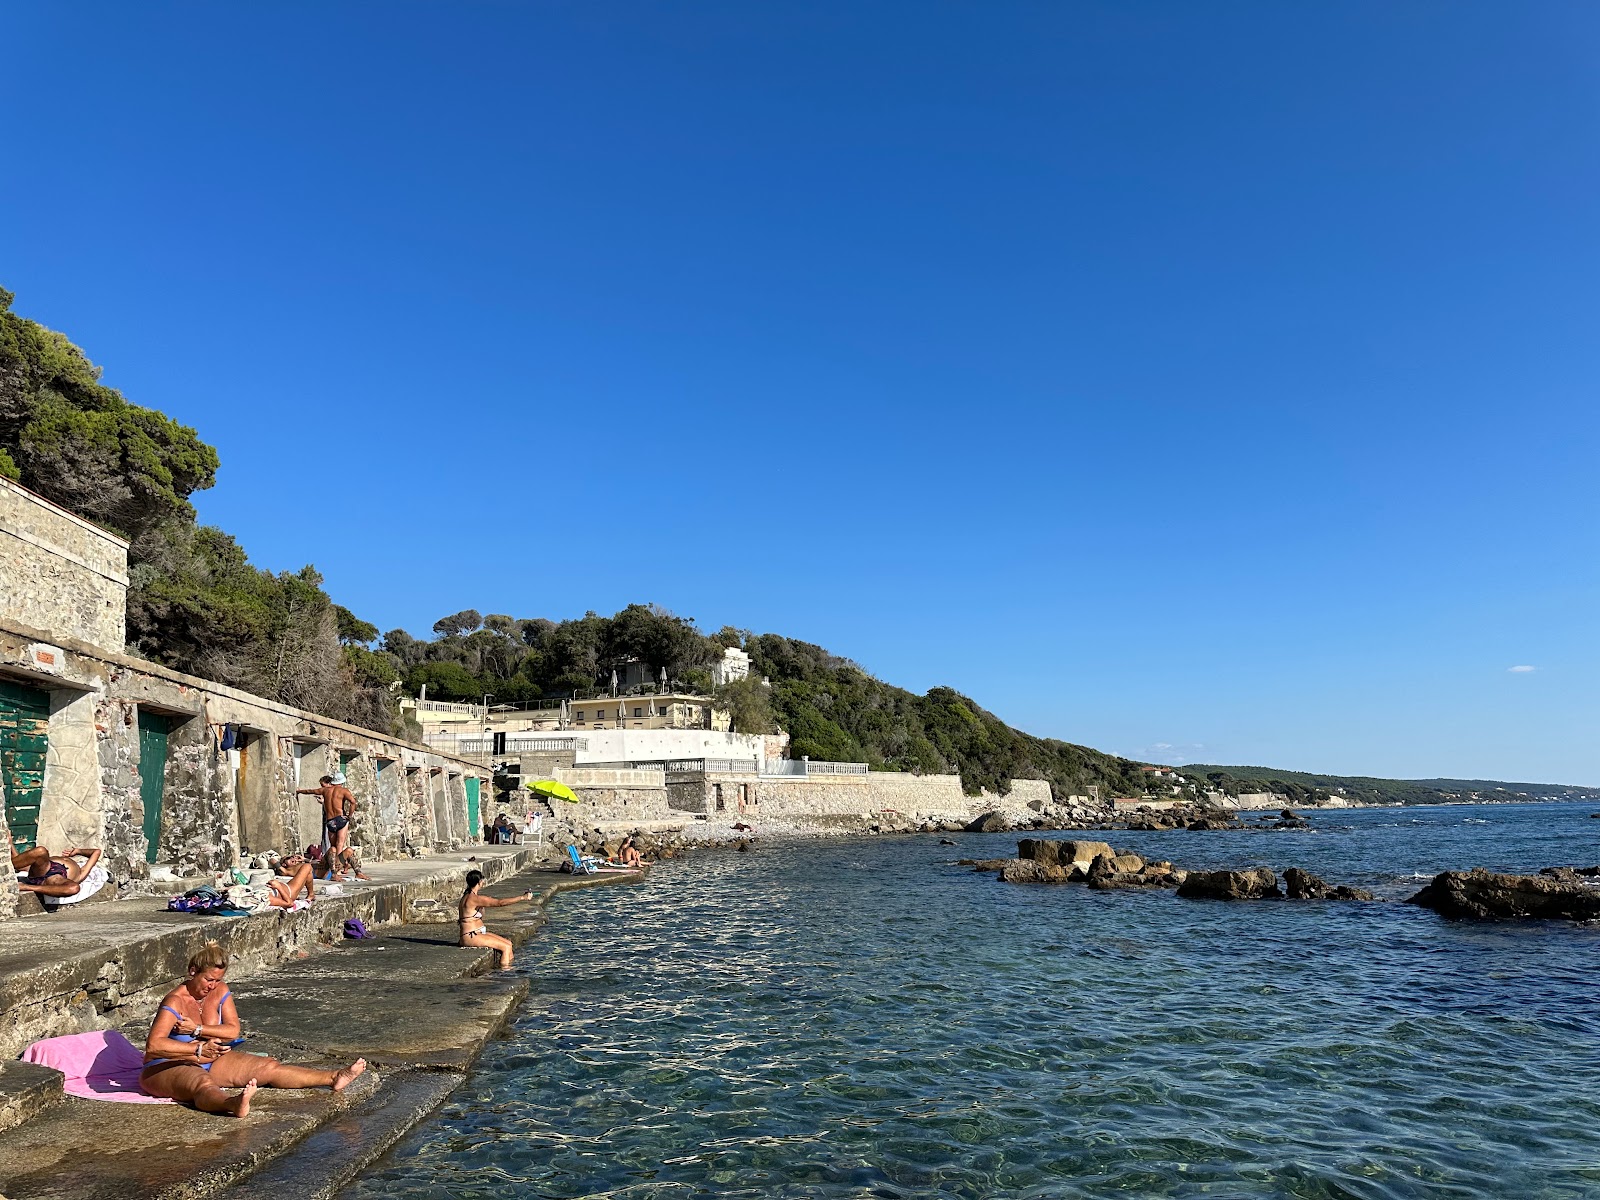 Spiaggia Margherita'in fotoğrafı taşlar yüzey ile